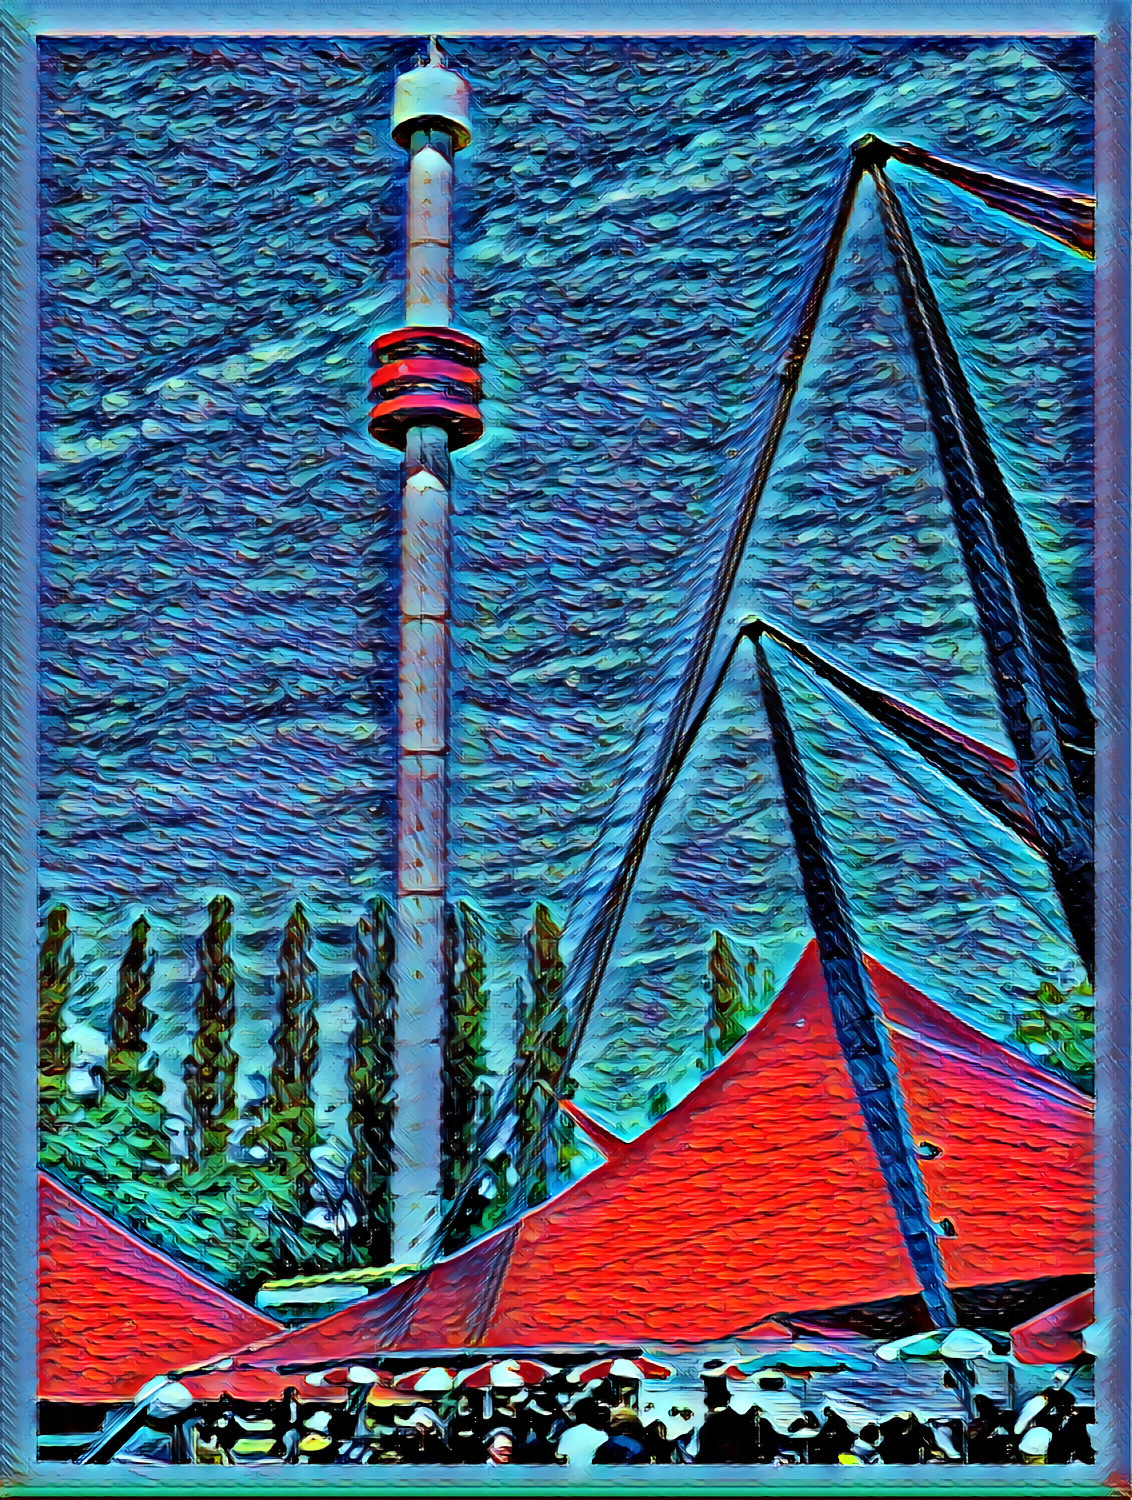 Tower of La Ronde, Expo 67 (Montreal) / Essay No.1